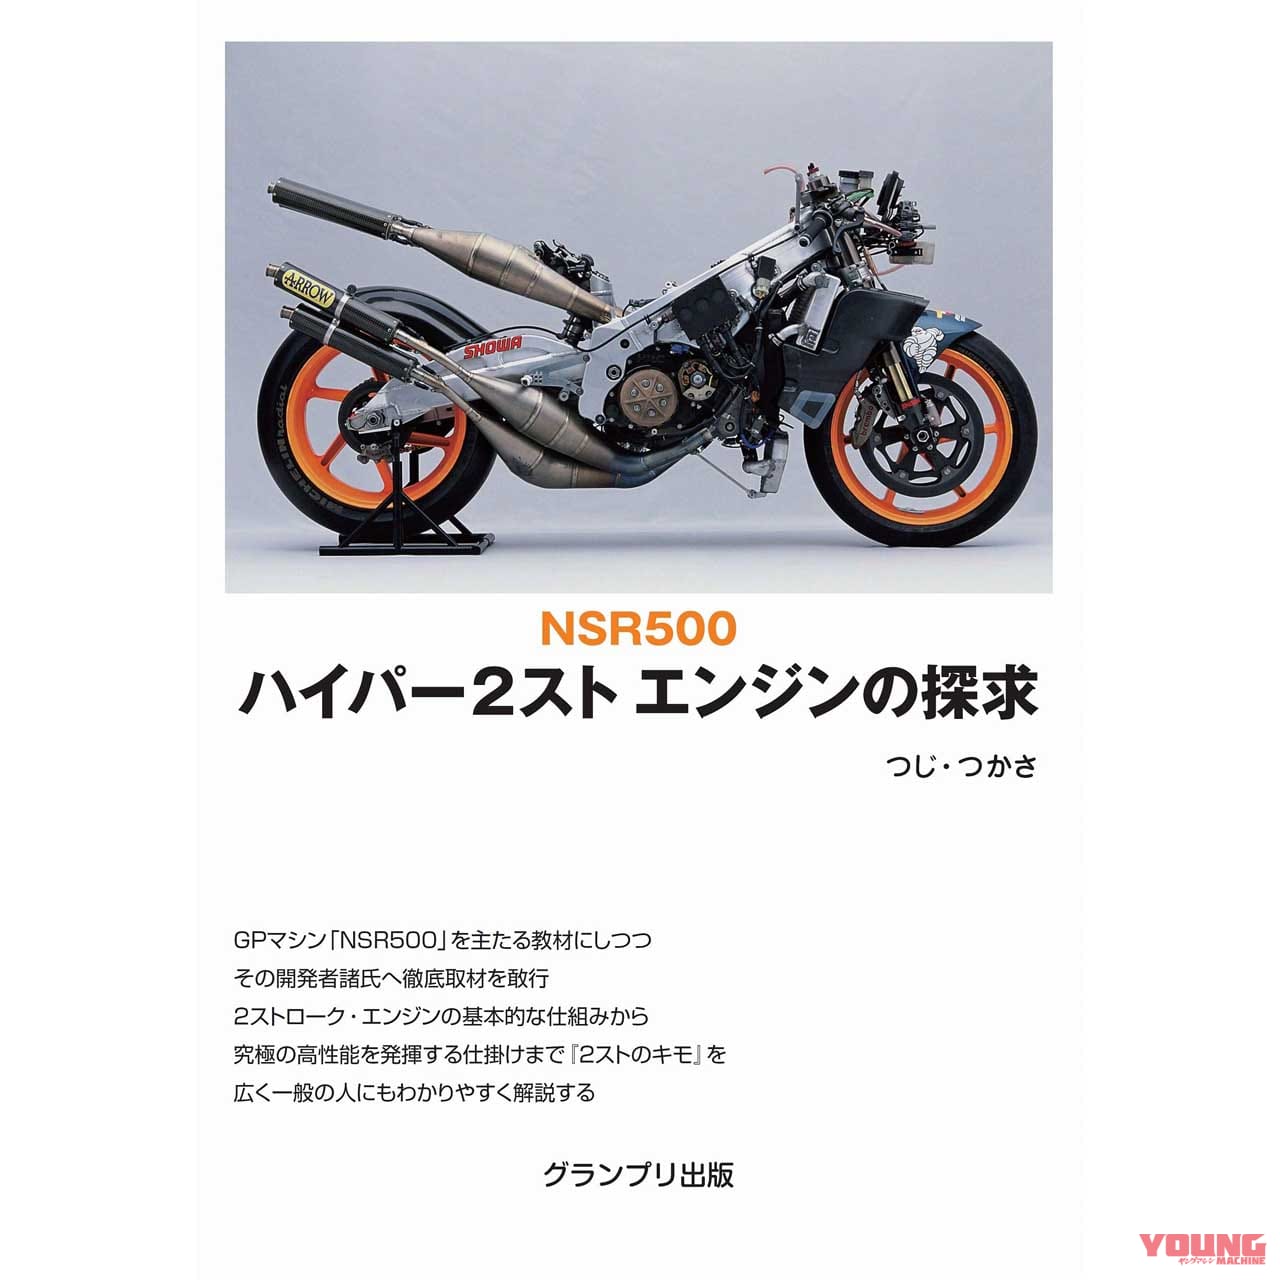 つじ つかさの絶版書 Nsr500 ハイパー2スト エンジンの探求 が新装版で復刊 Webヤングマシン 最新バイク情報